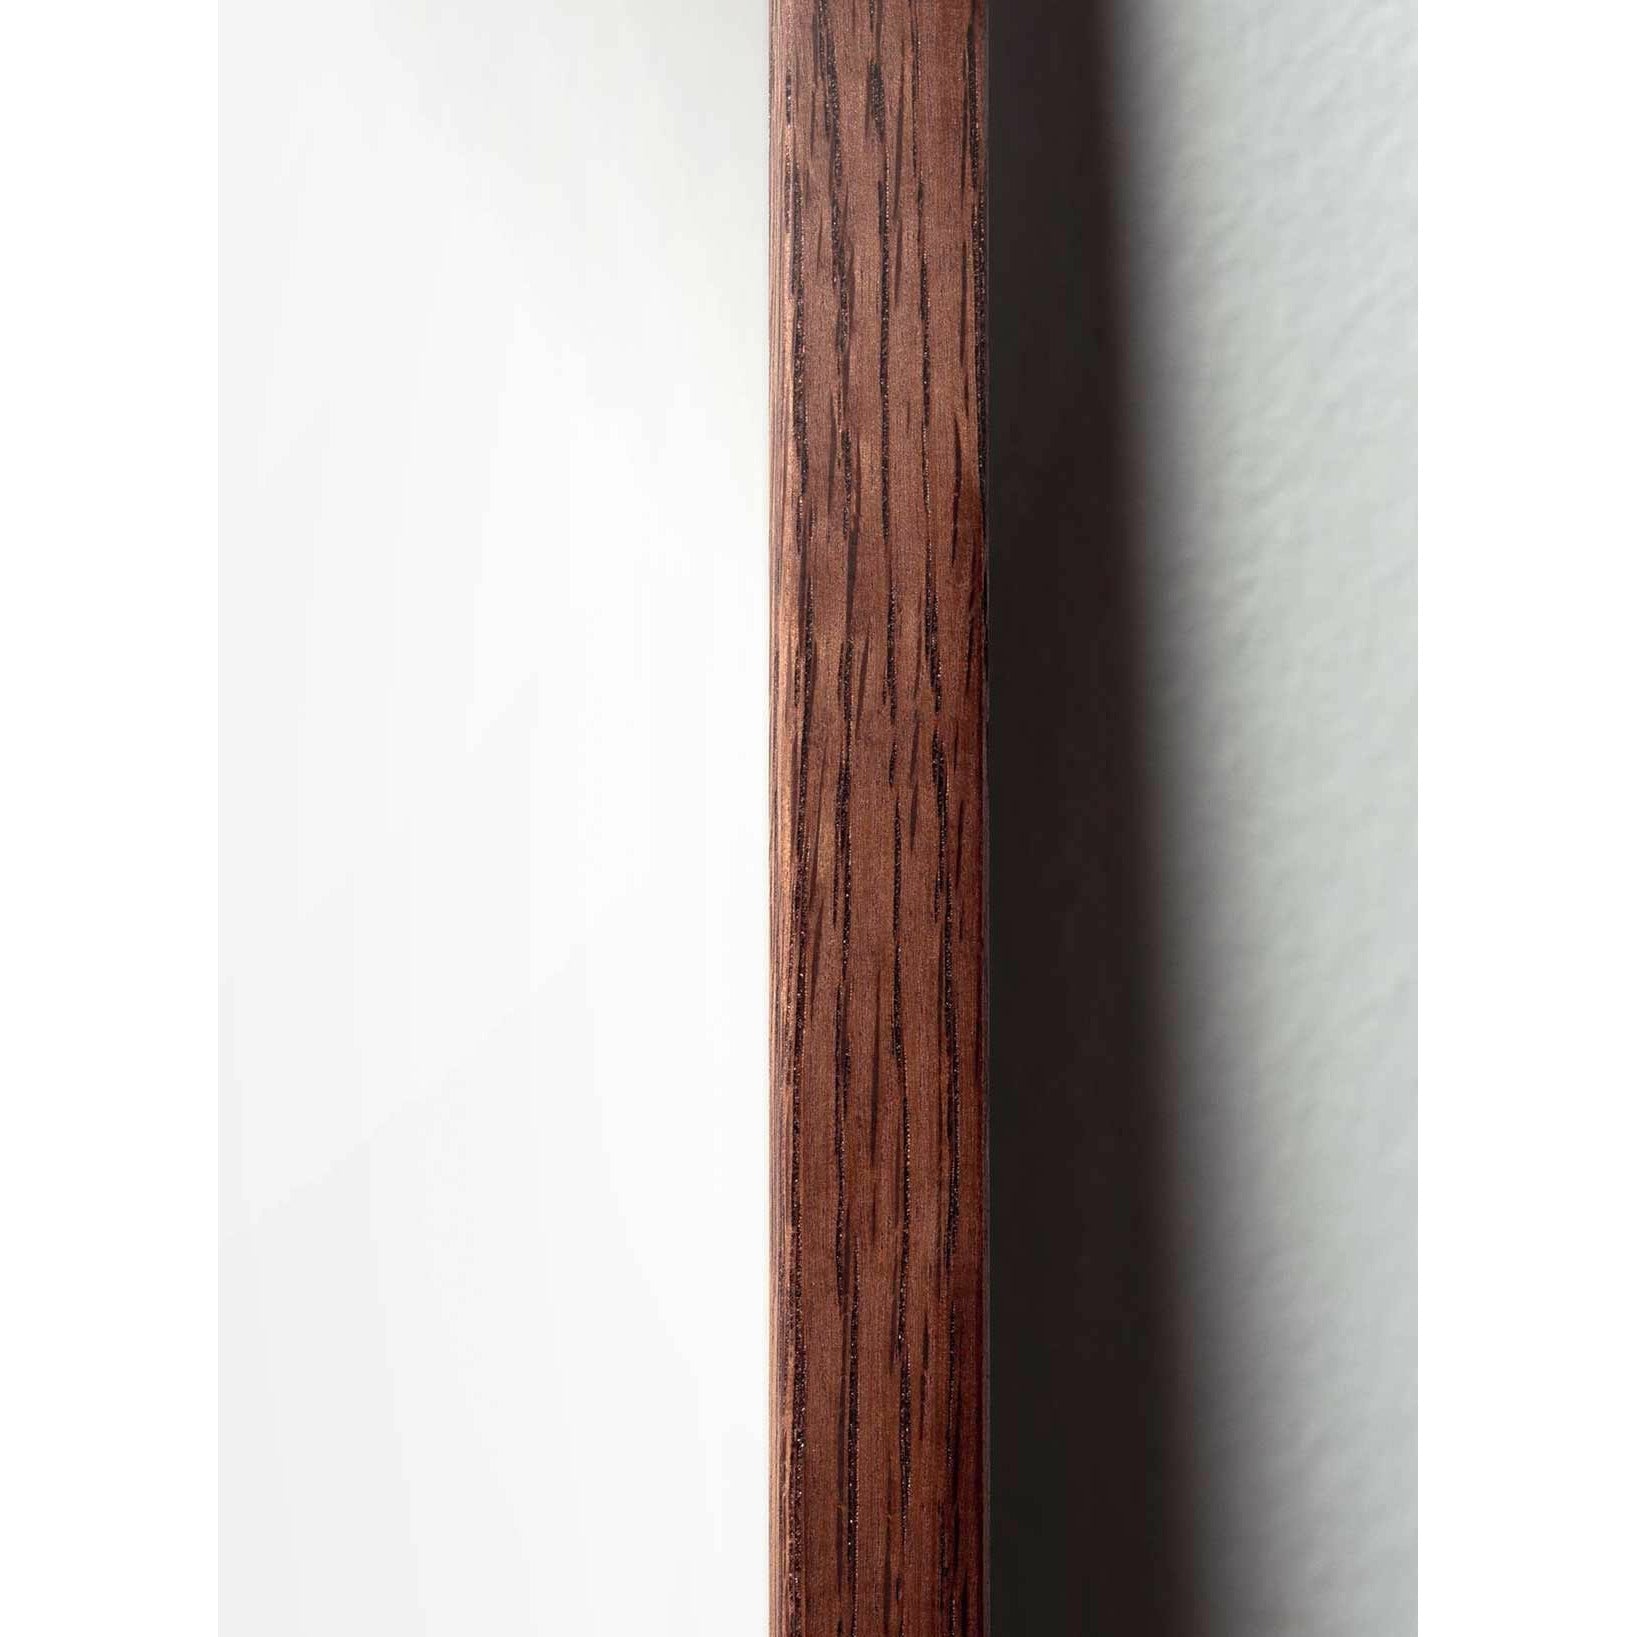 Póster Figuras de huevo de creación, marco hecho de madera oscura A5, marrón